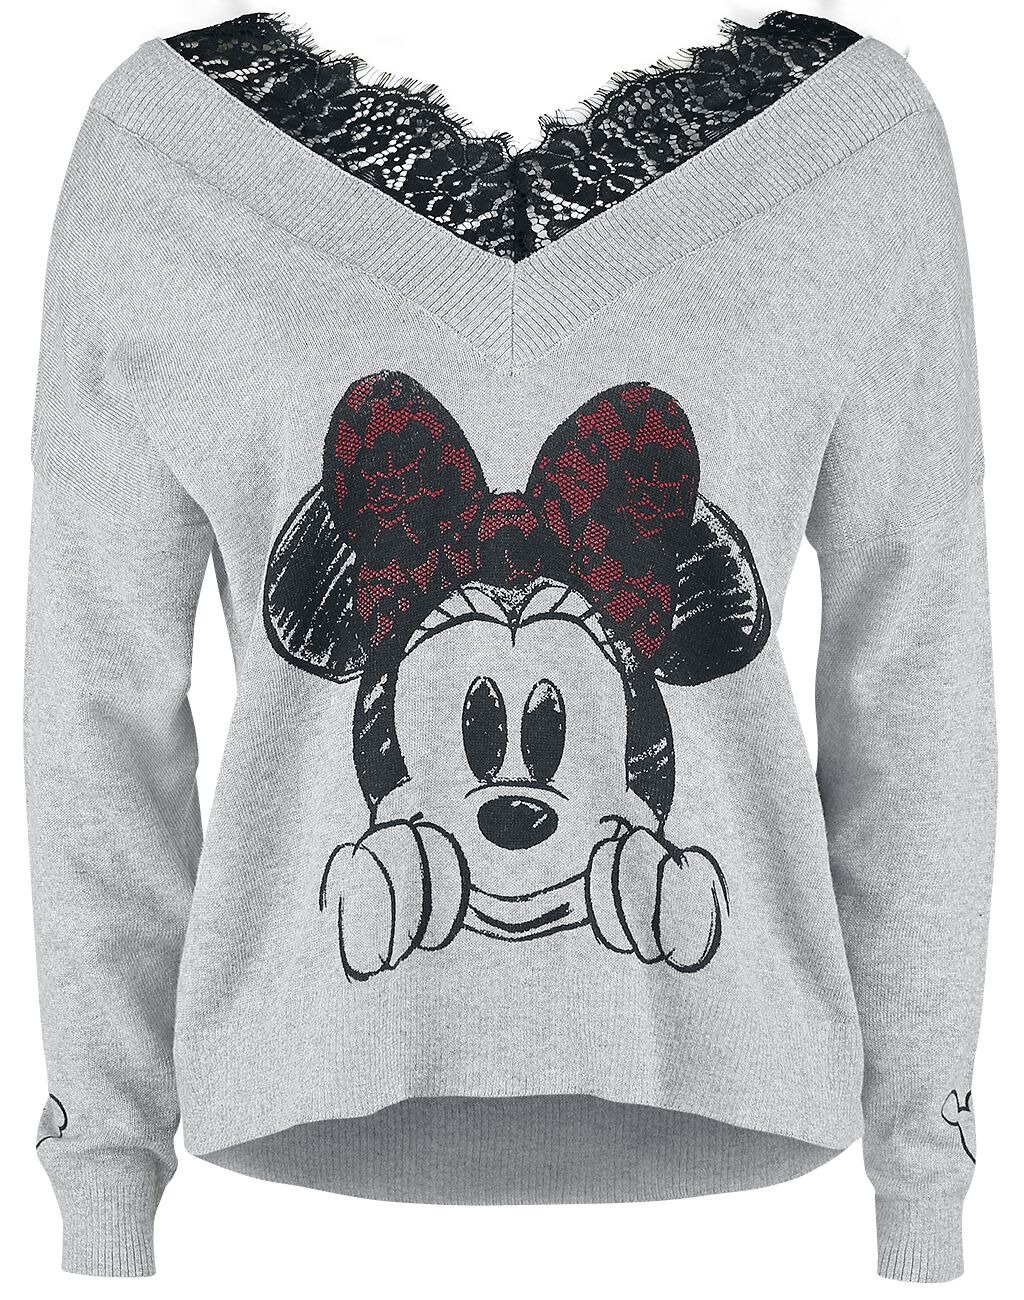 Sweat-shirt Disney de Mickey & Minnie Mouse - Minnie Mouse - S à XXL - pour Femme - gris chiné